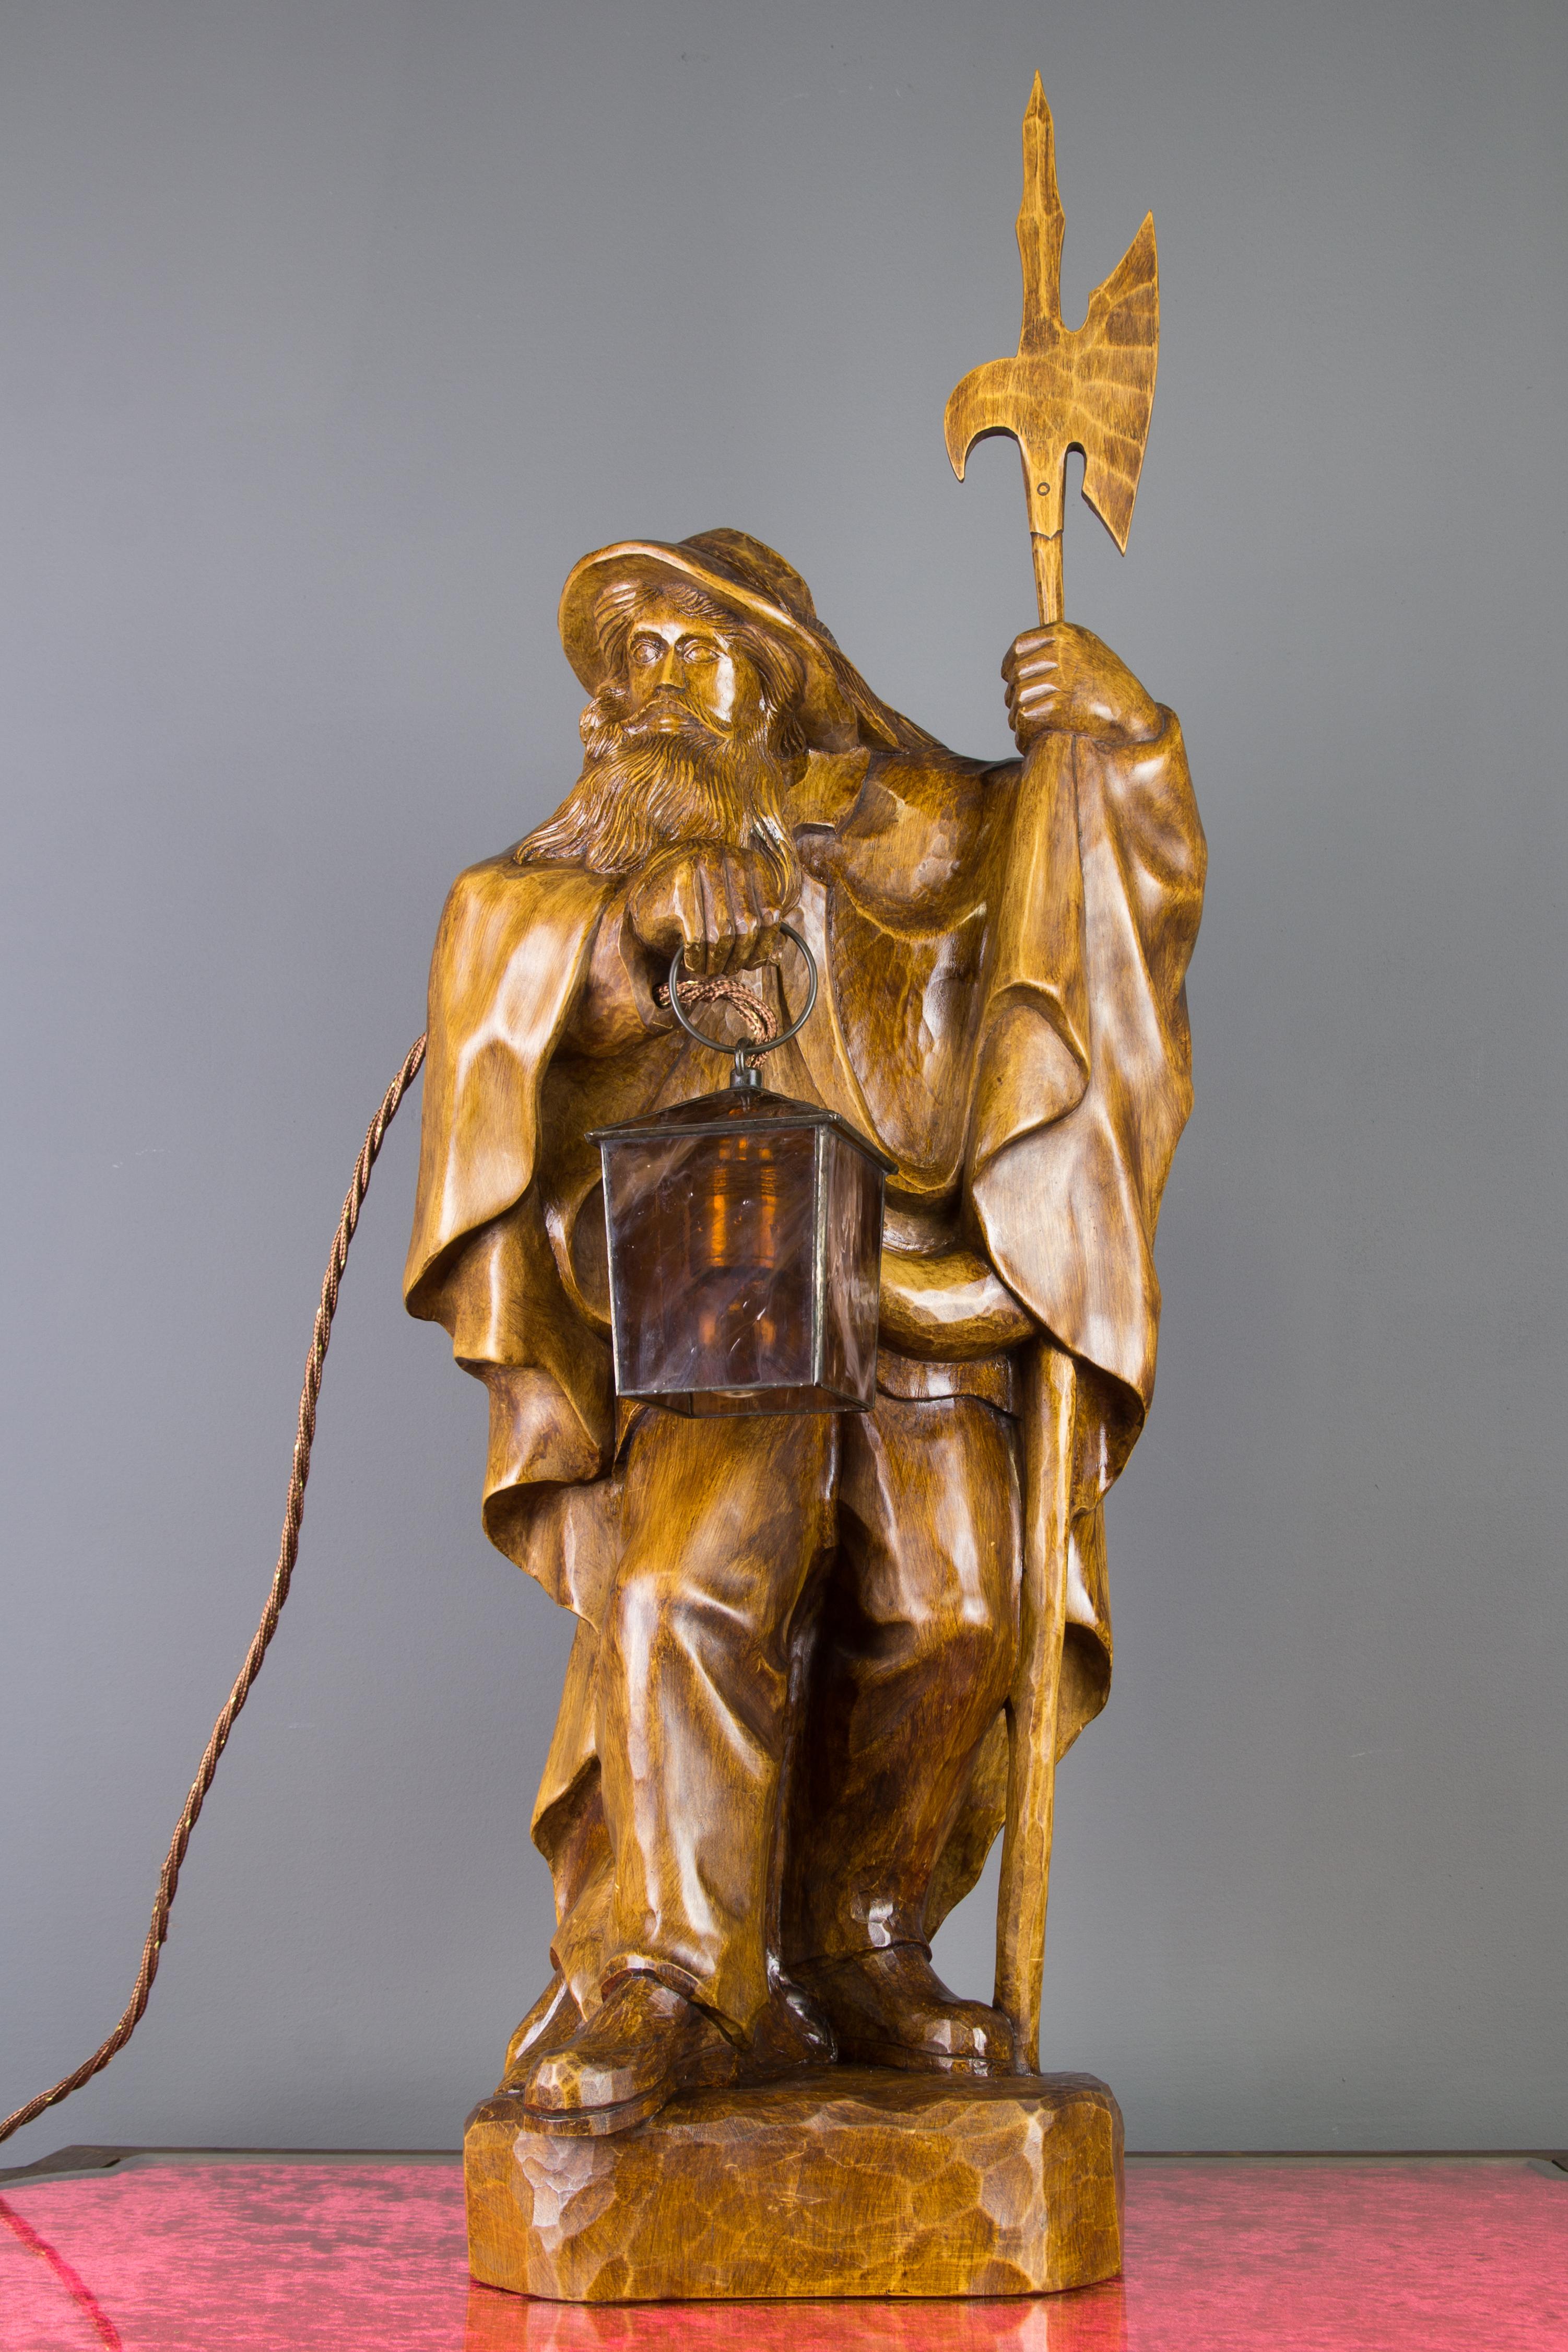 Grande sculpture allemande en bois, sculptée à la main, représentant un veilleur de nuit avec une lanterne, datant des années 1950.
Cette lampe en bois magistralement sculptée à la main présente une grande sculpture d'un veilleur de nuit avec une